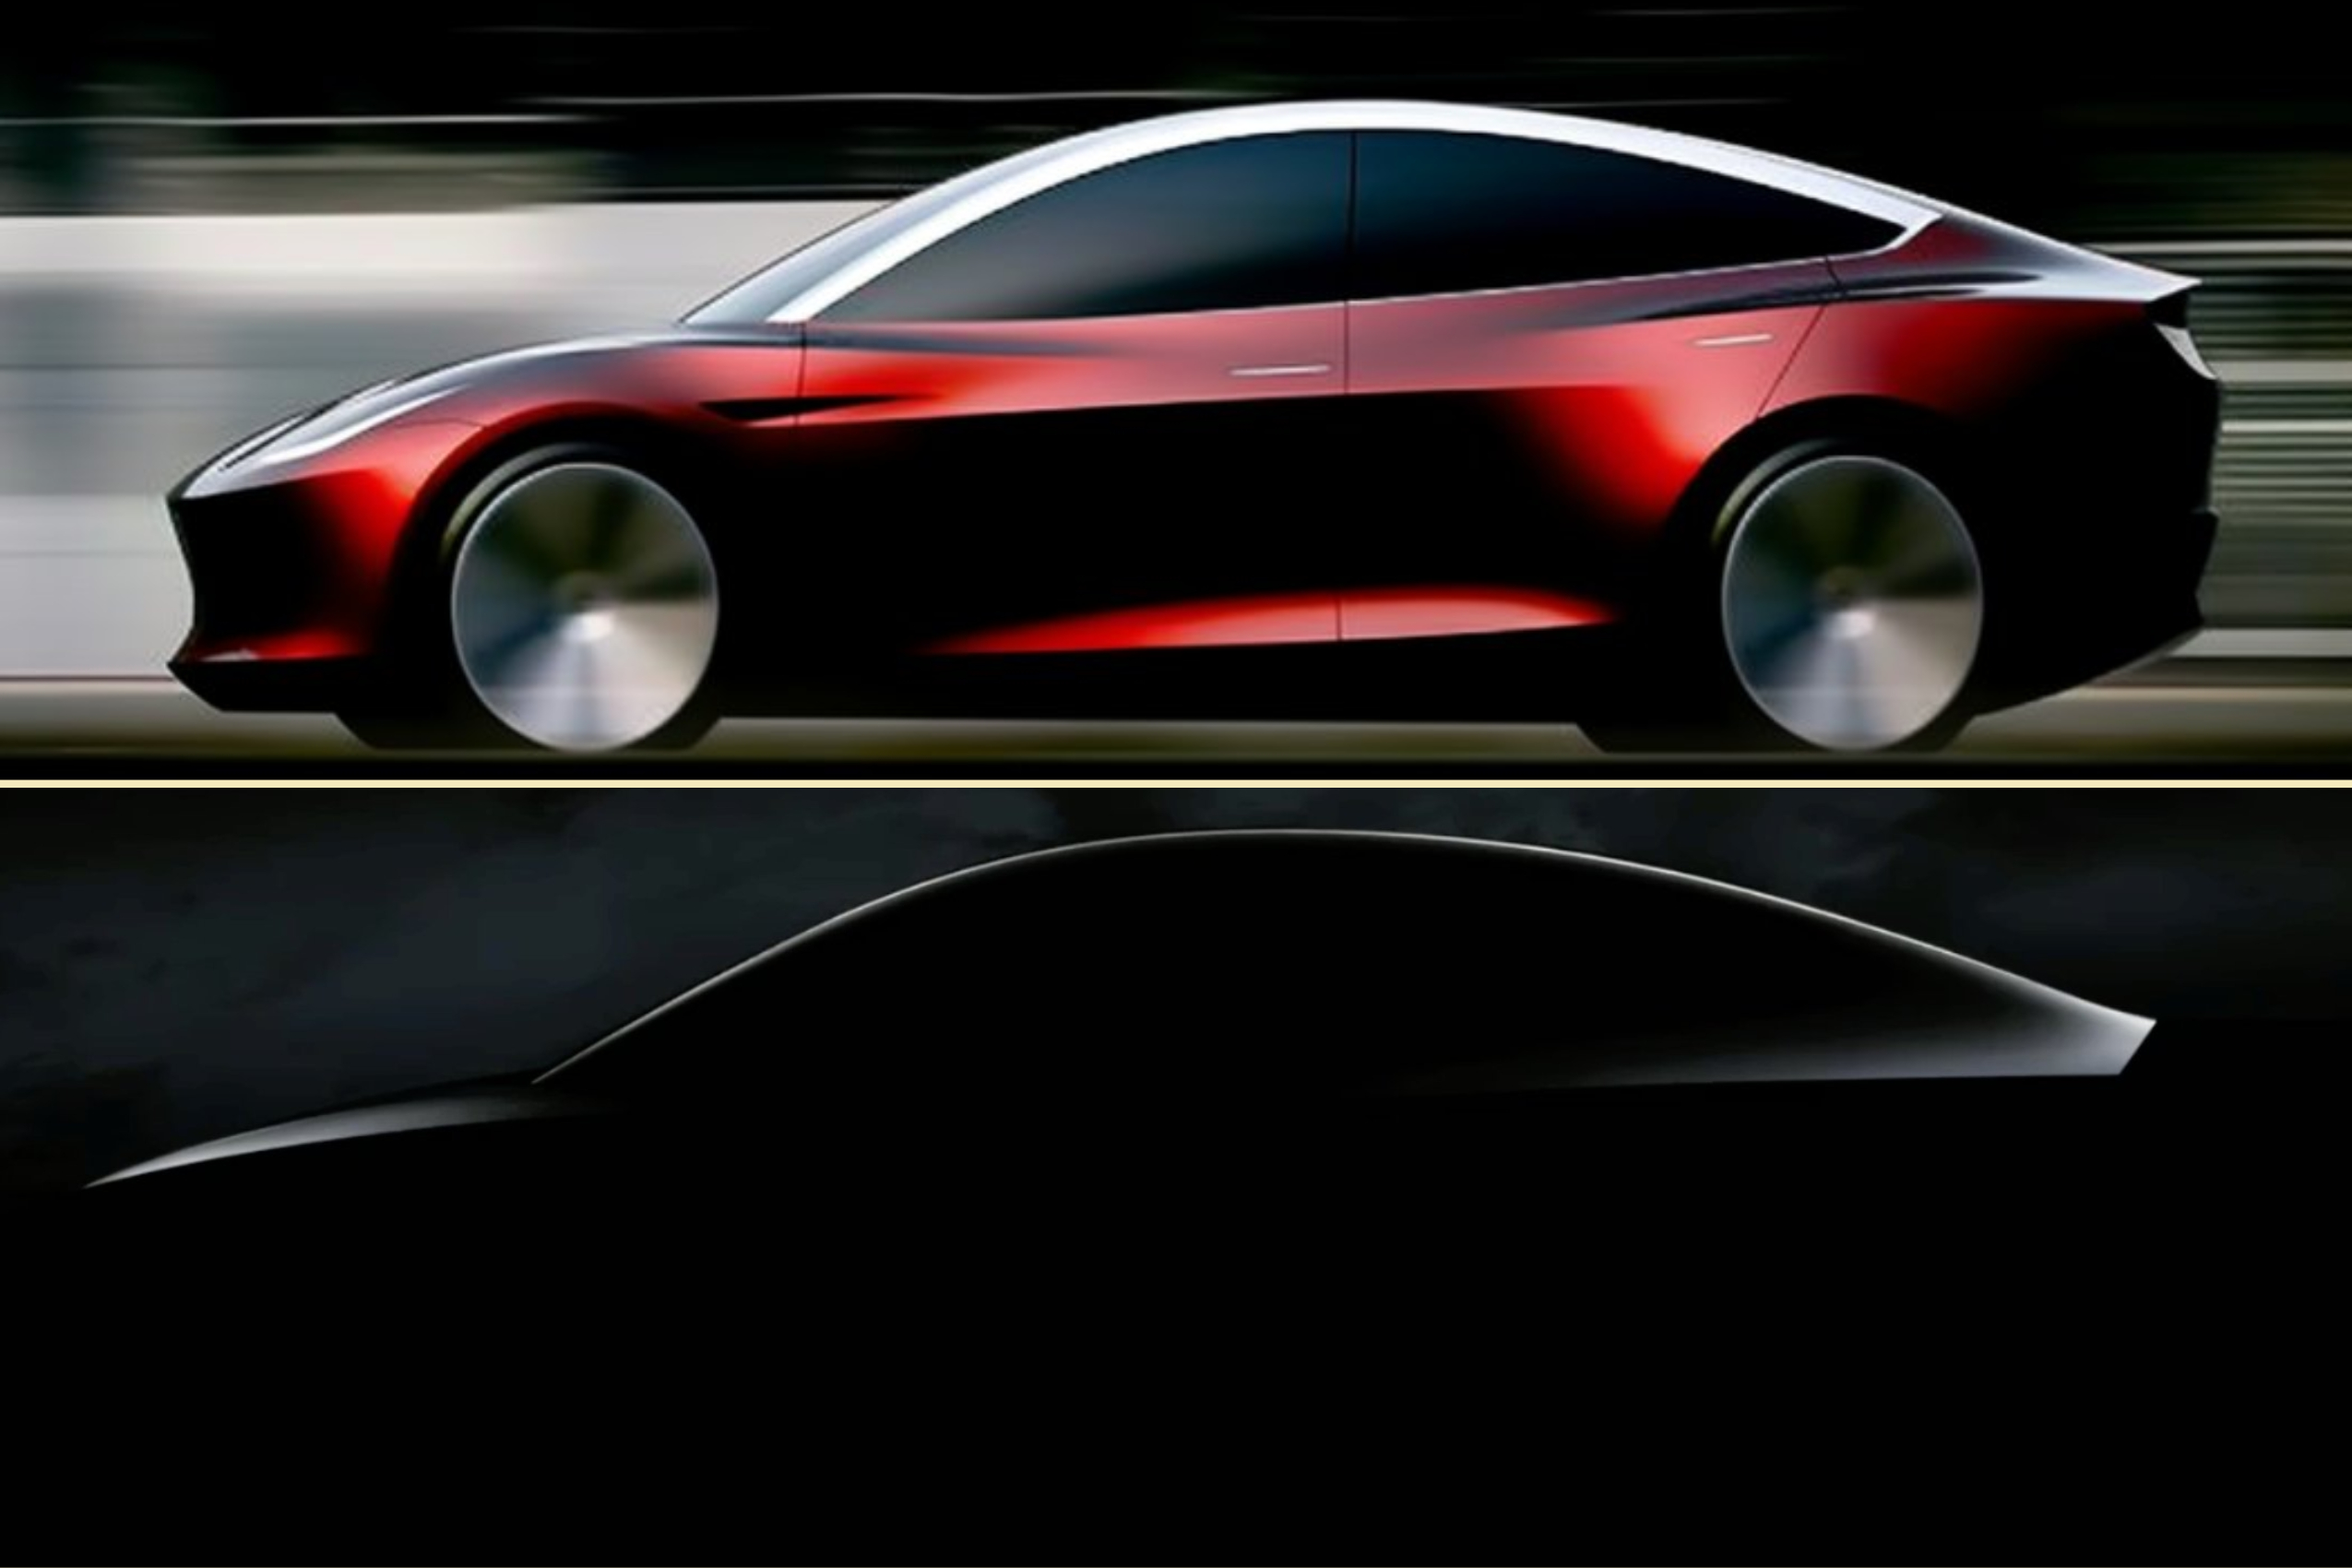 По словам Маска, электромобиль Tesla следующего поколения будет гораздо более традиционным